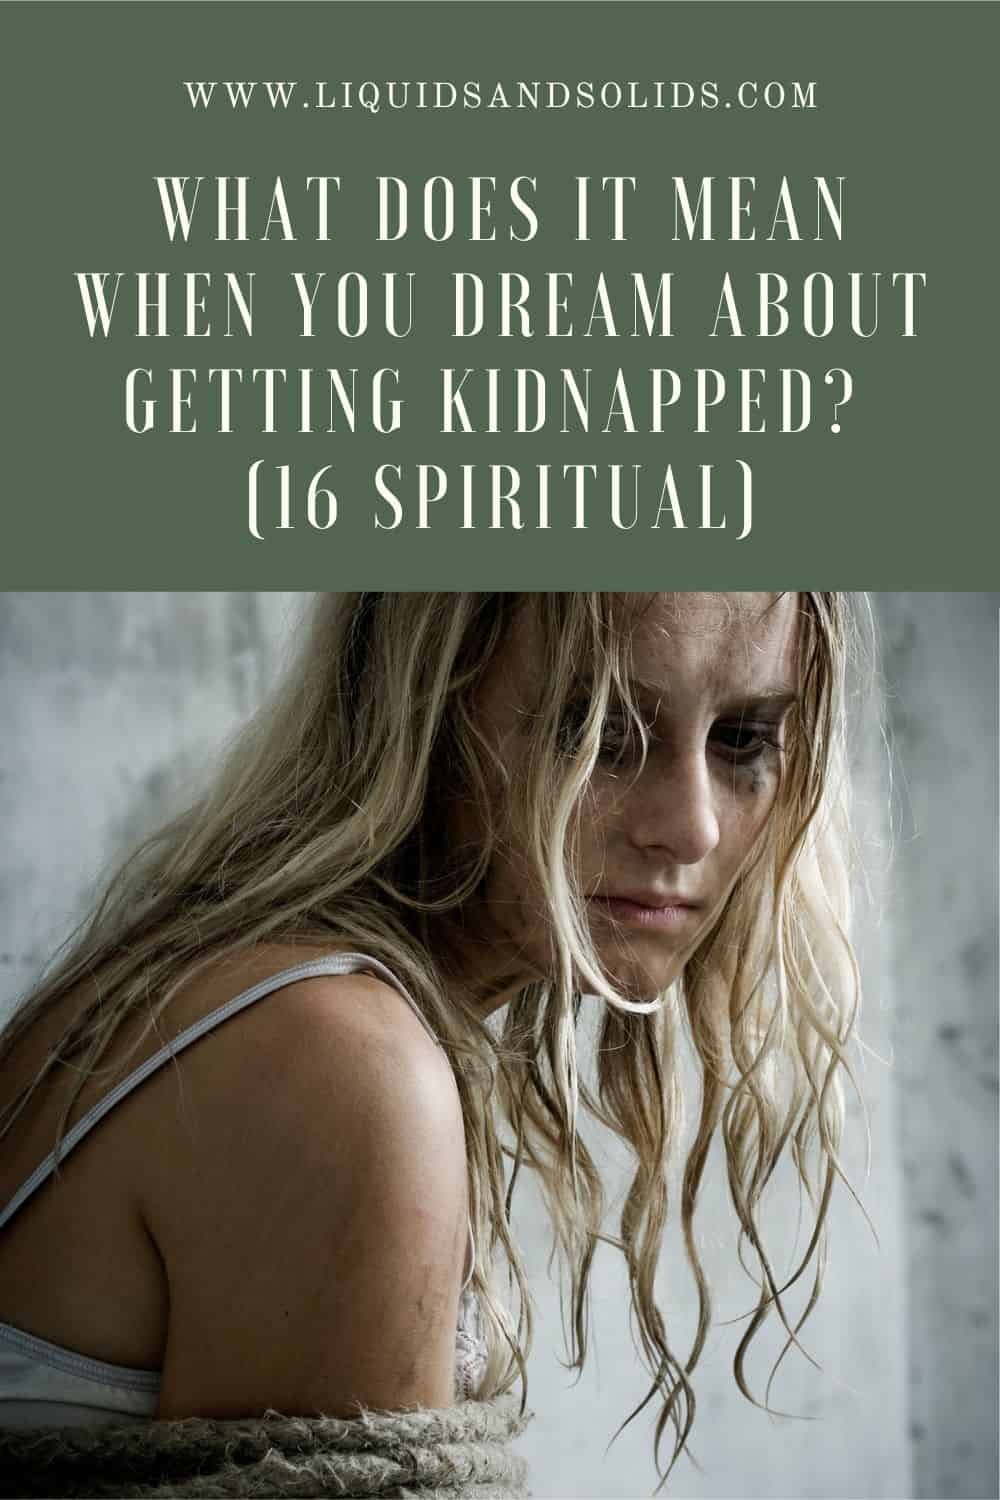  Que significa cando soñas con ser secuestrado? (16 significados espirituais)